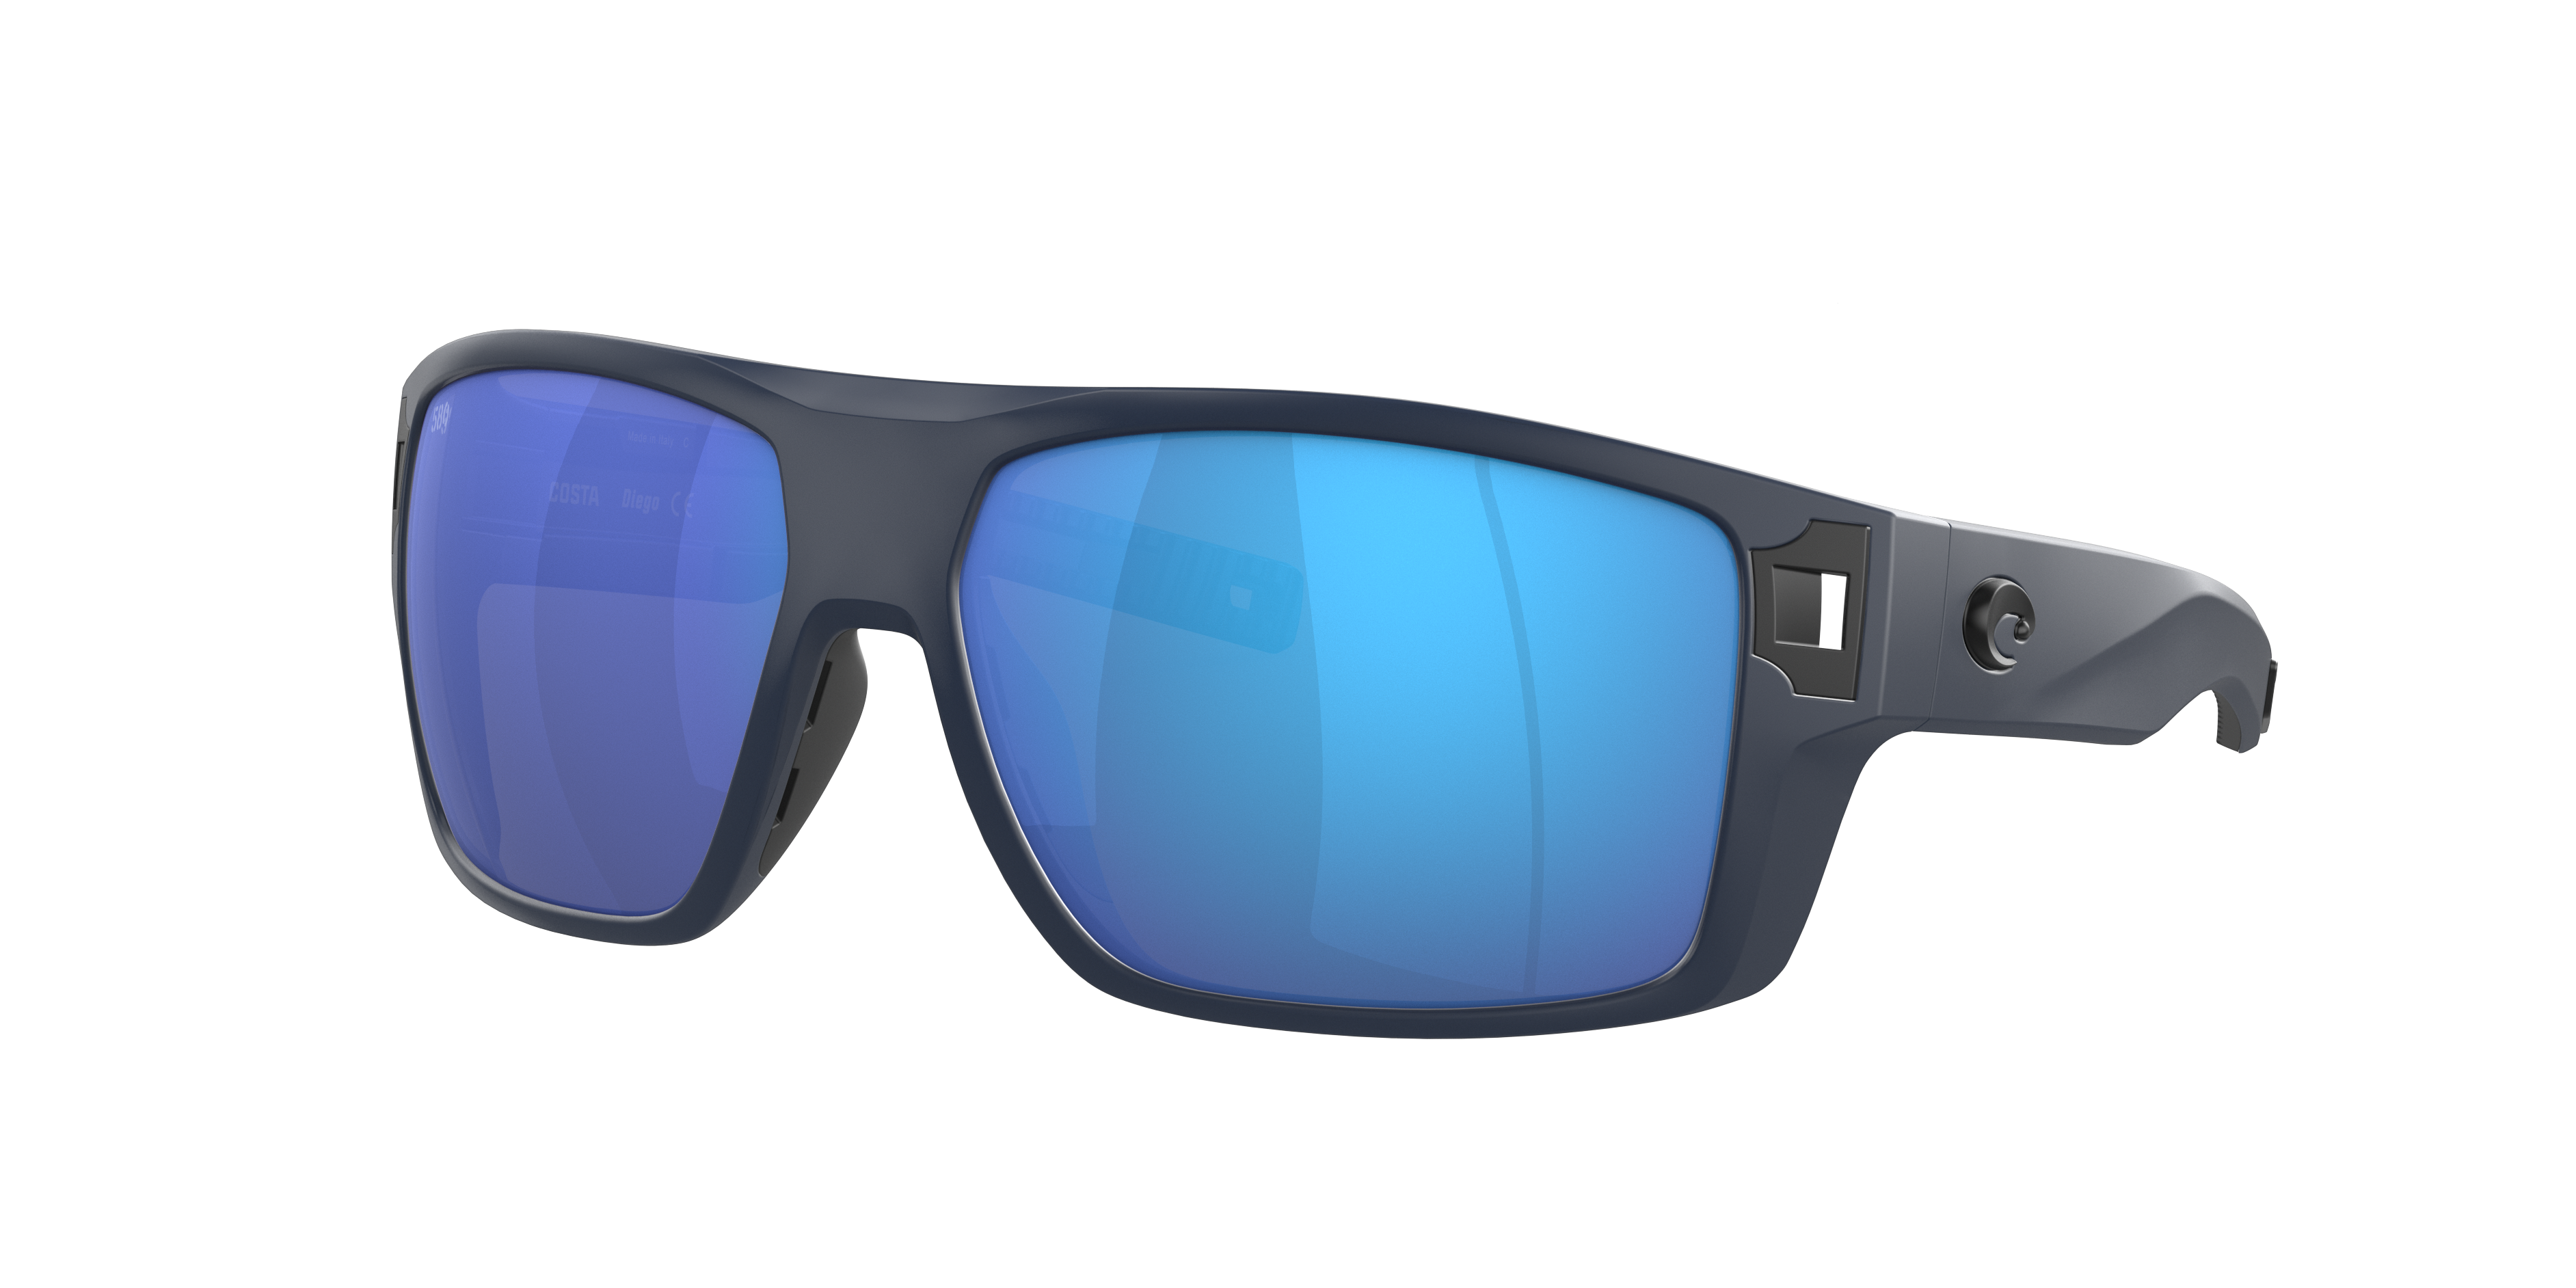 Diego Polarized Sunglasses in Blue Mirror | Costa Del Mar®